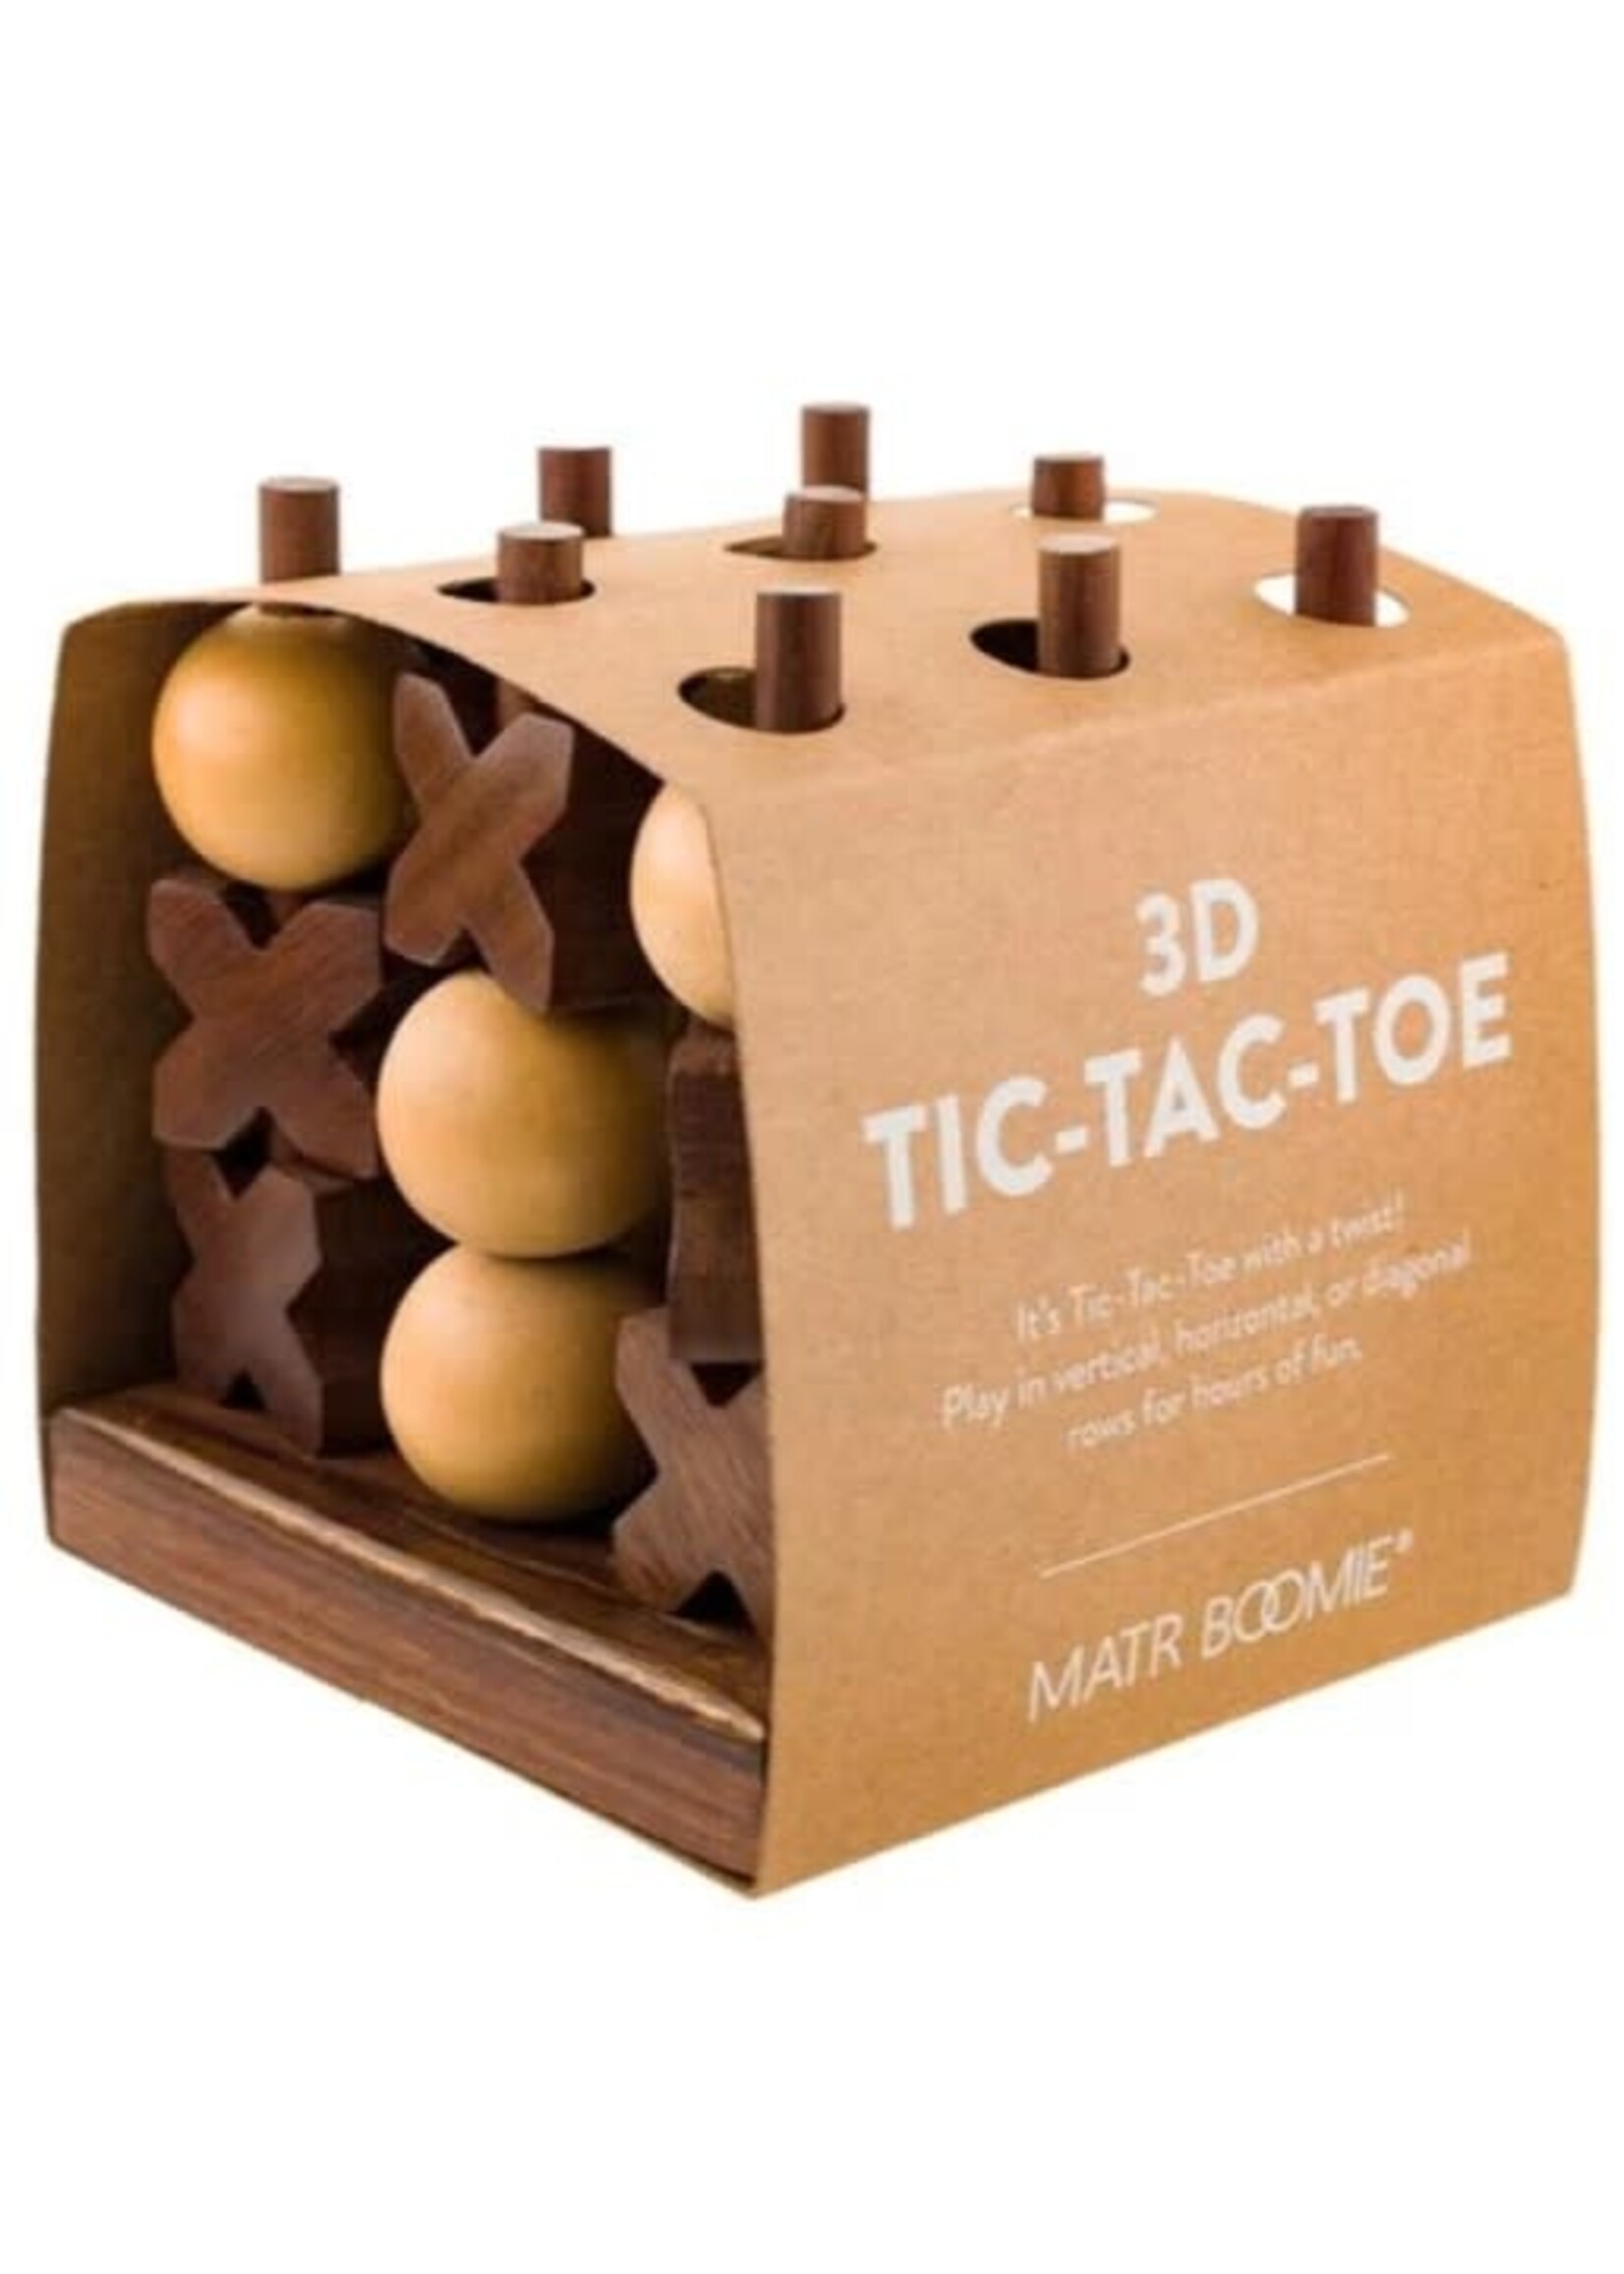 3D Tic Tac Toe Game